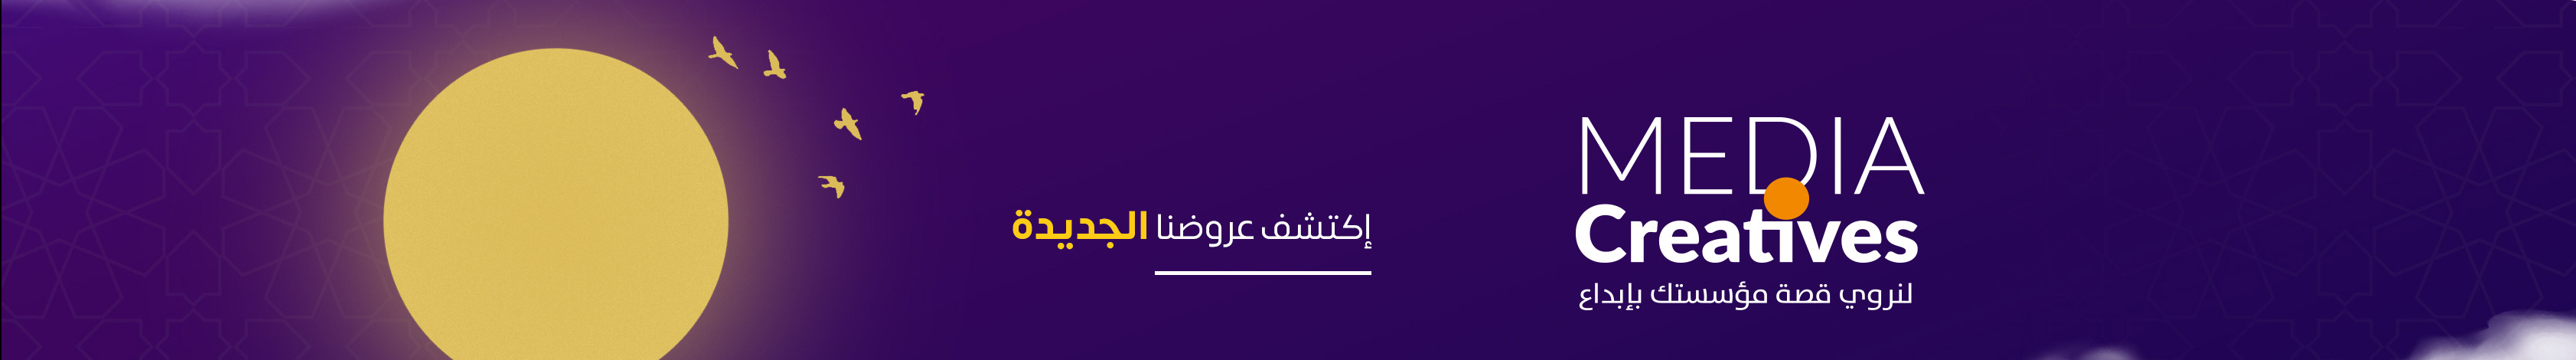 Banner de perfil de khaled djaber